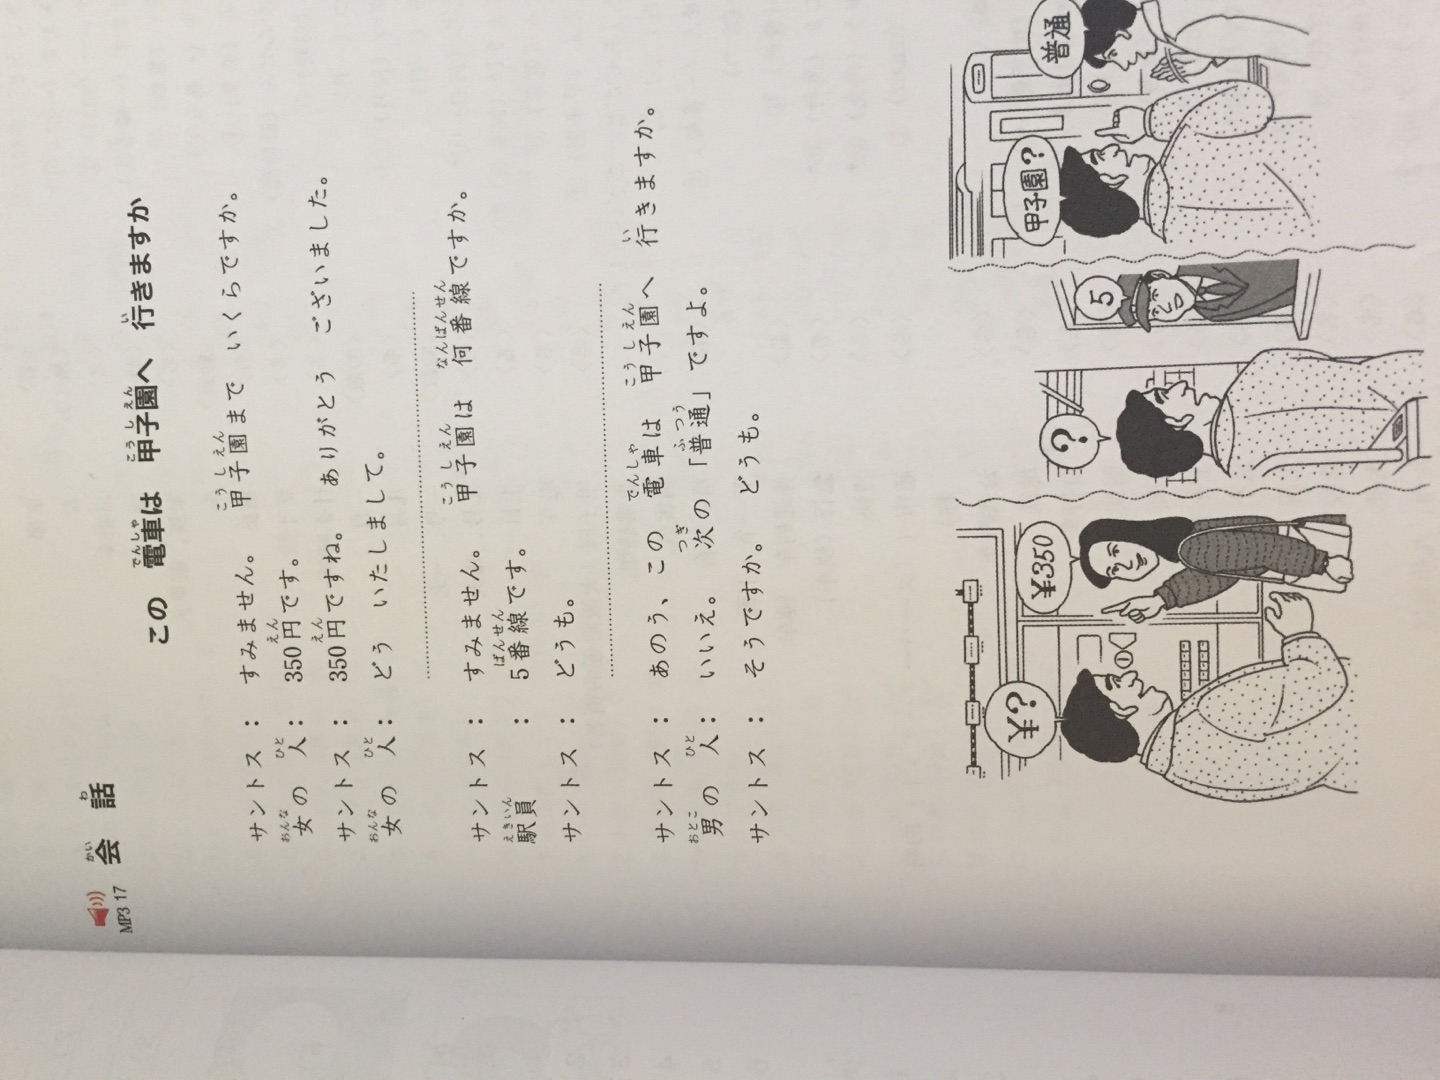 之前一直买的标准日语，后来听说《大家的日语》更贴近生活，所以买来第一本看看，刚看，感觉又得从新学一遍了……